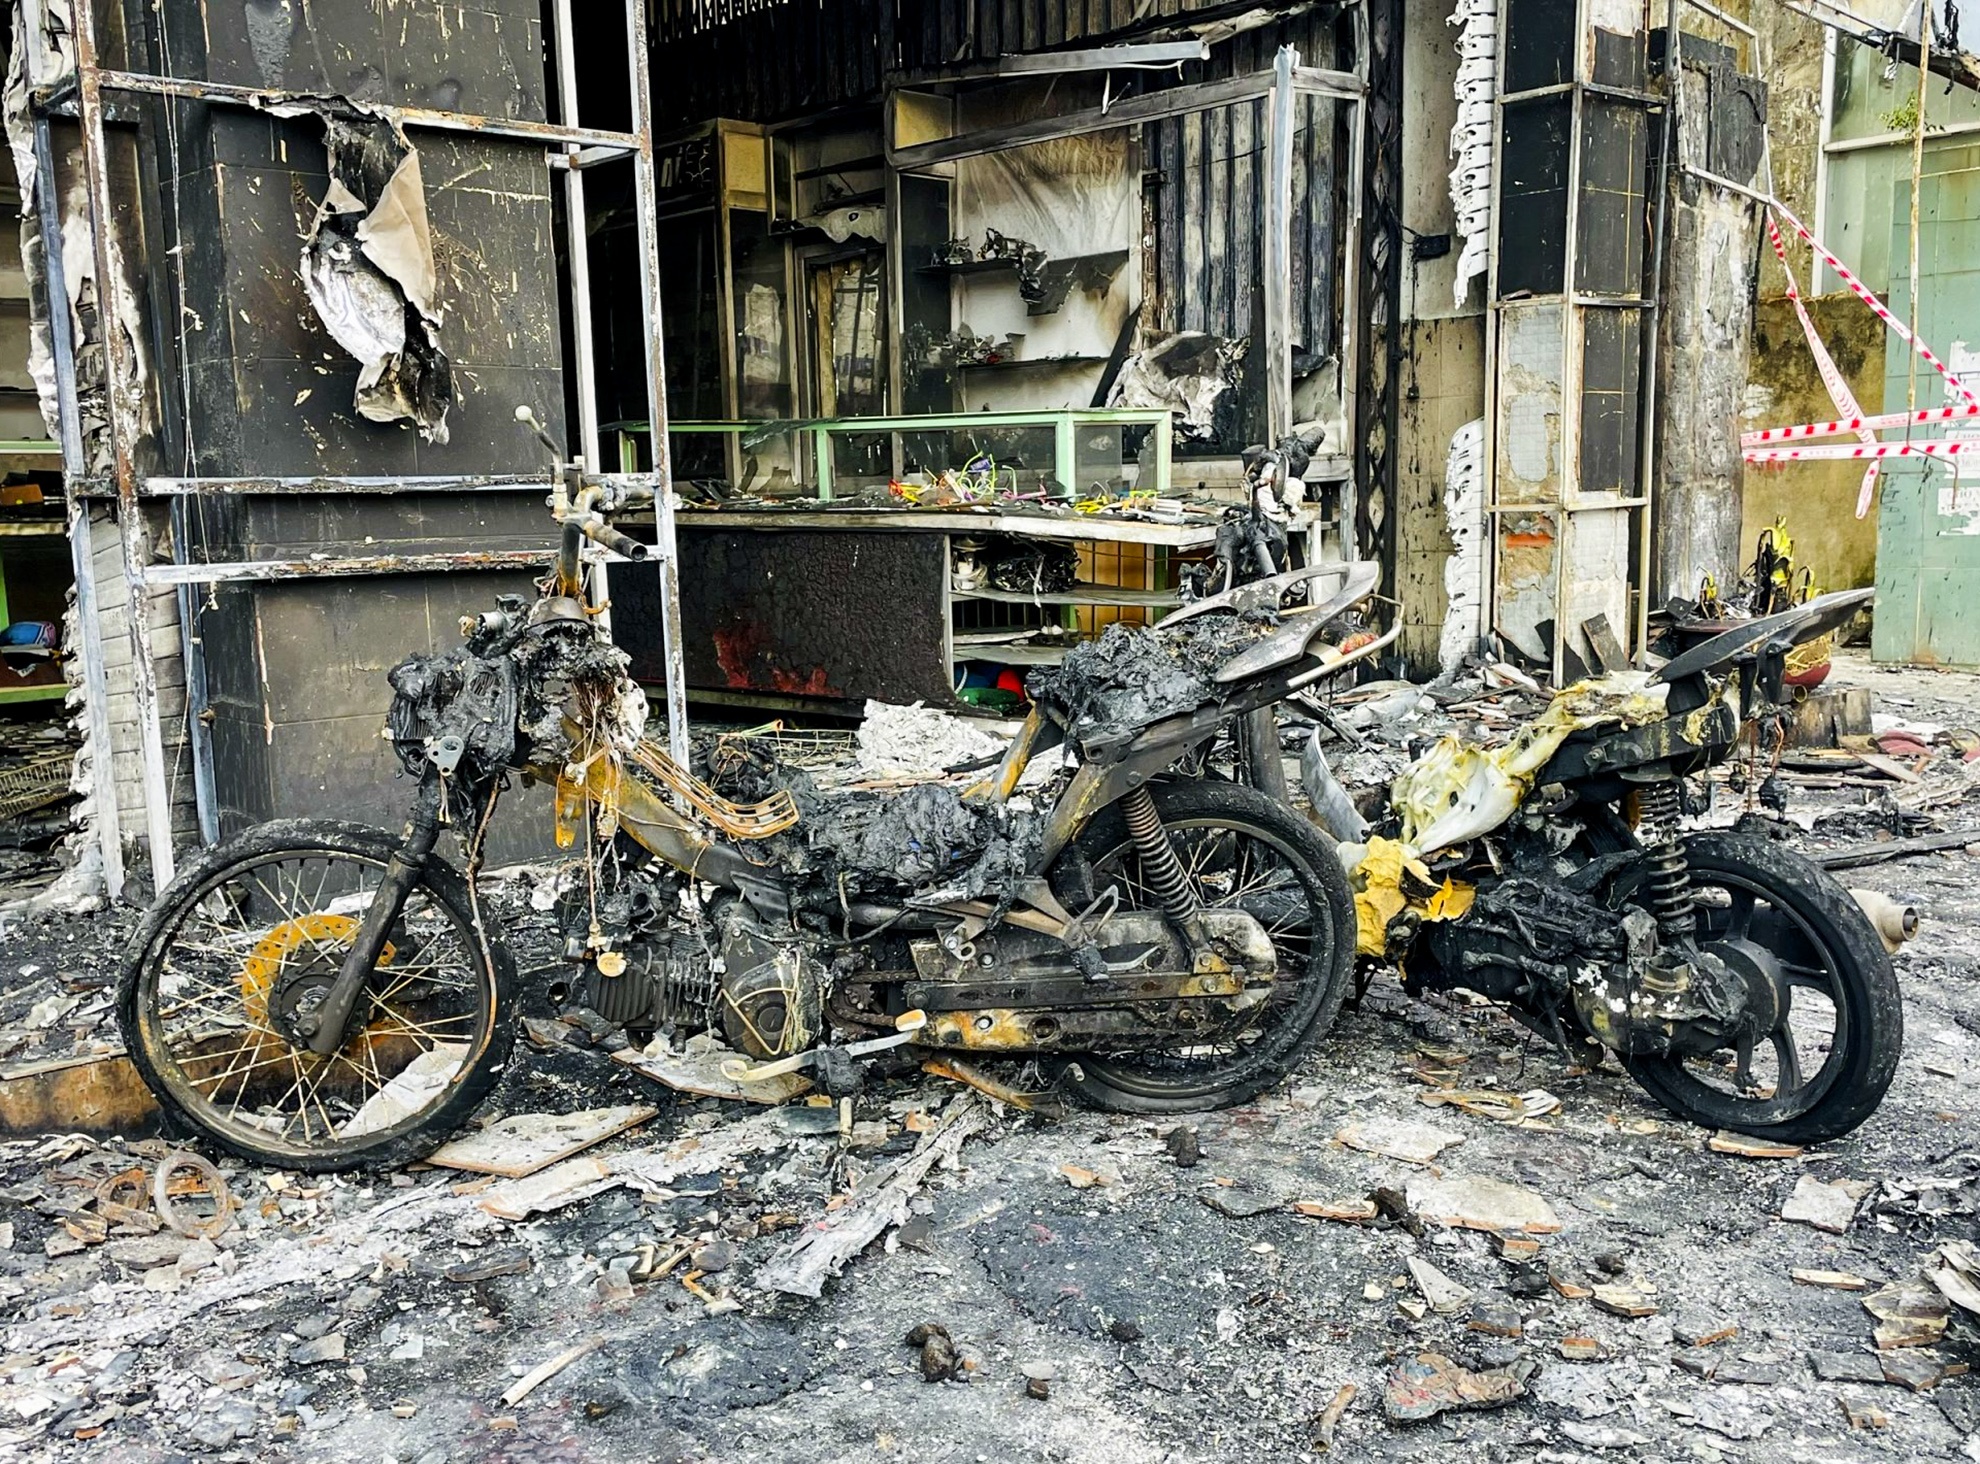 Phong tỏa 3 ngôi nhà bị cháy rụi ở Quảng Ngãi để điều tra vụ hỏa hoạn - Ảnh 11.